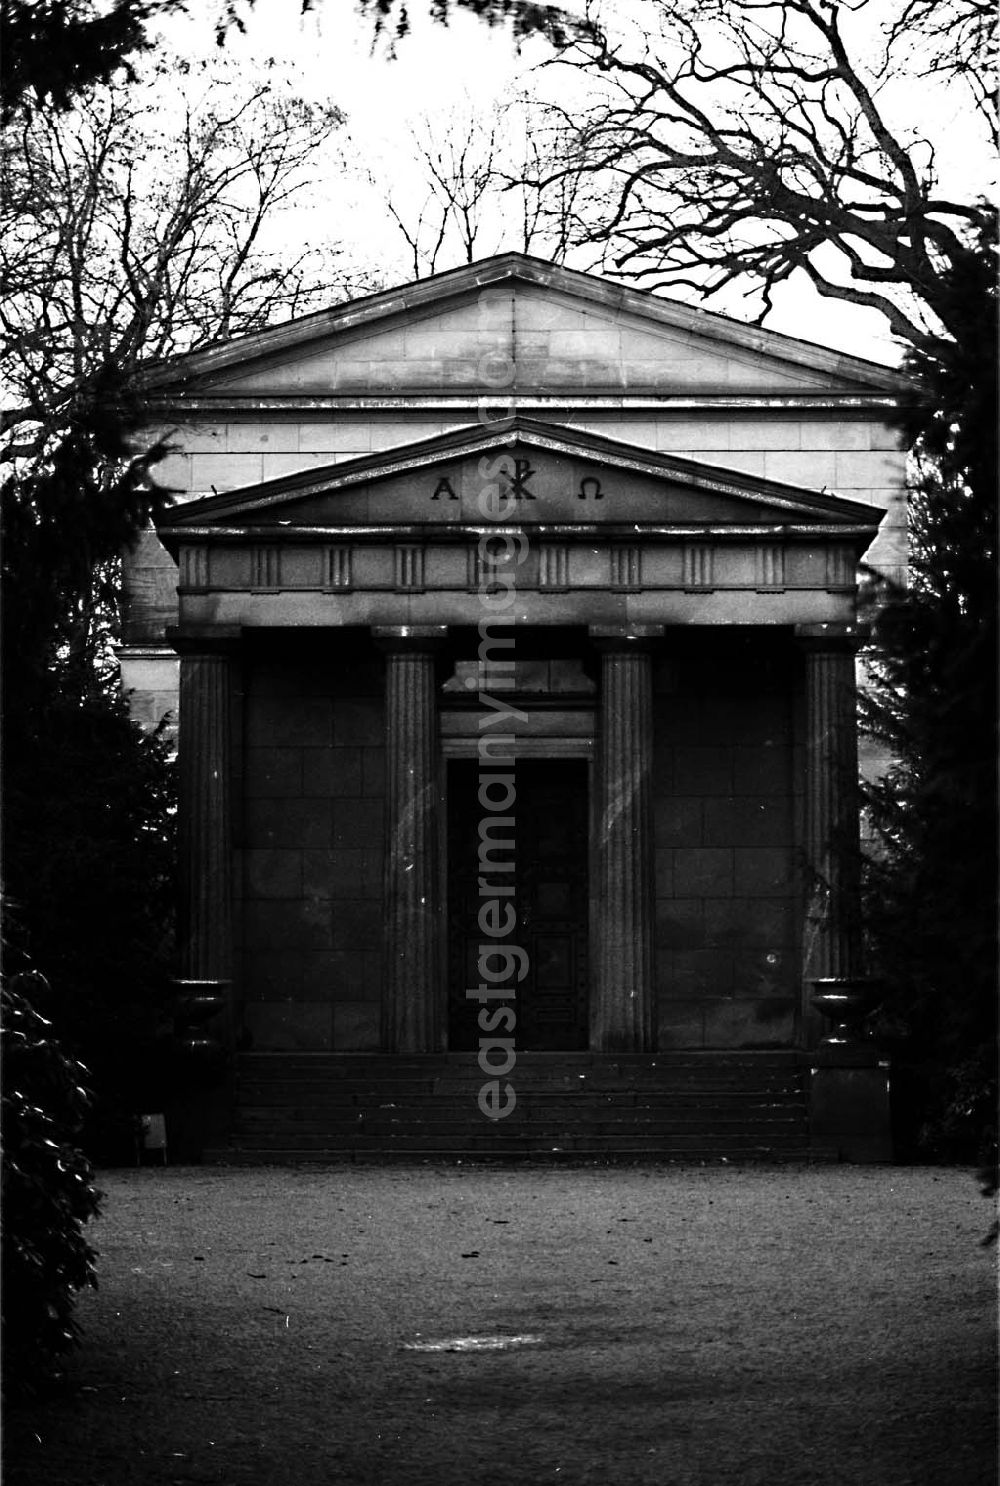 GDR picture archive: Charlottenburg / Berlin - Mausoleum der Preußenkönige im Schloßpark Charlottenburg (Berlin) 6.12.1990 Winkler Umschlag Nr.:152